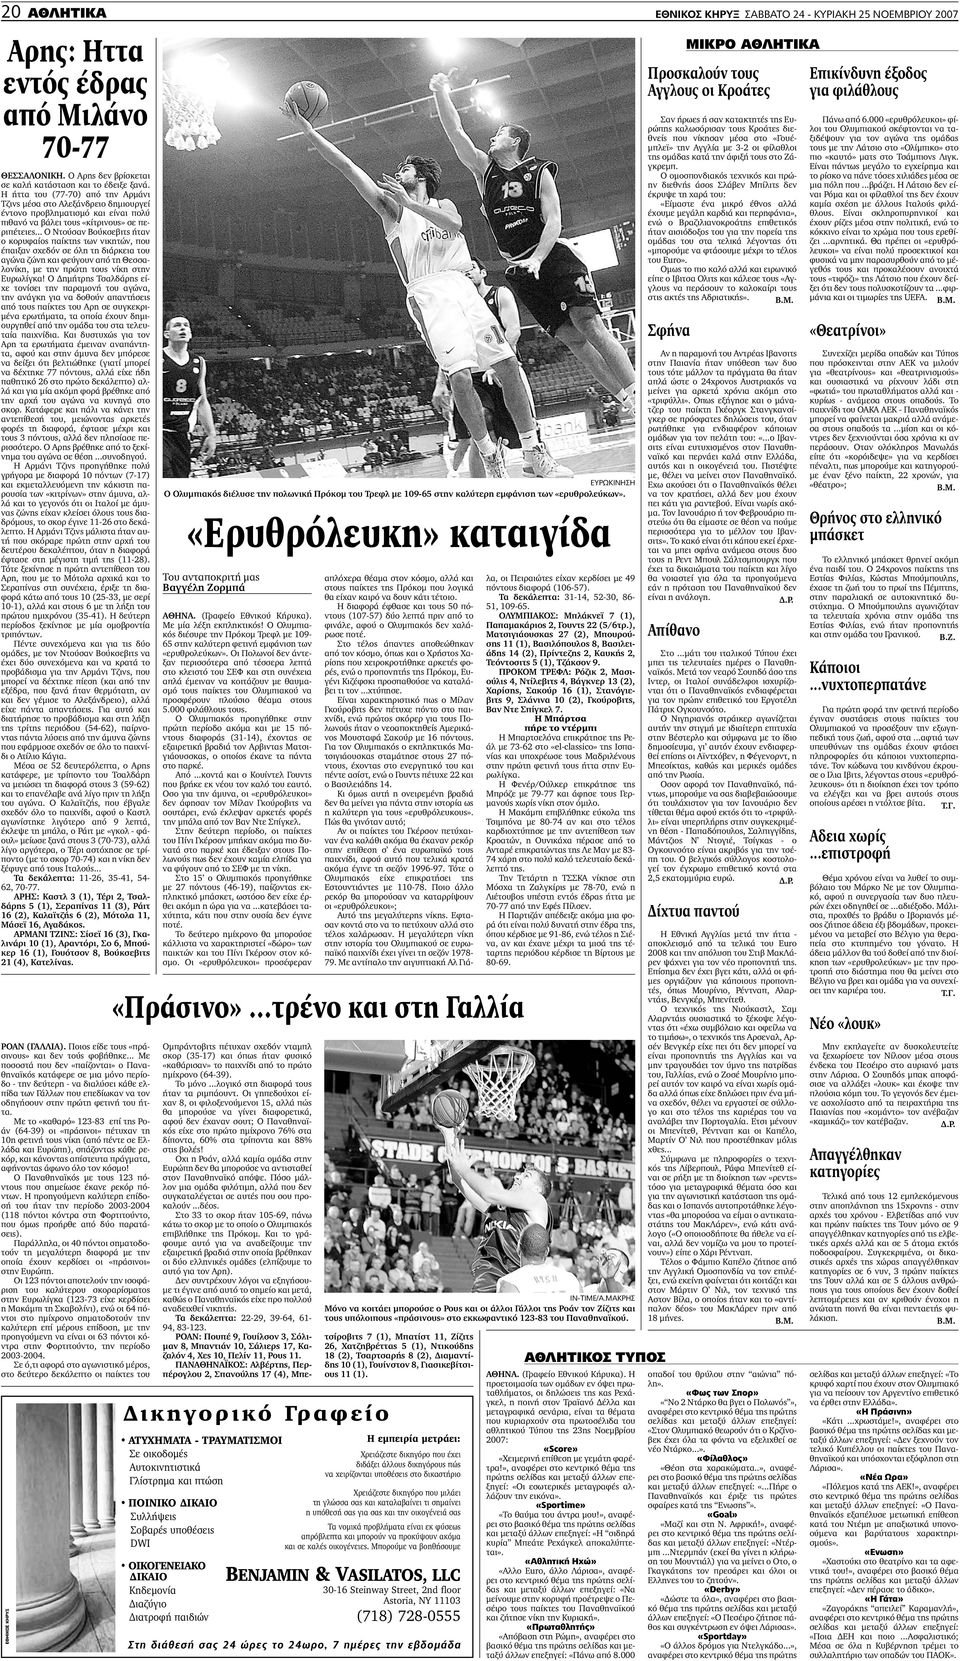 .. Ο Ντούσαν Βούκσεβιτς ήταν ο κορυφαίος παίκτης των νικητών, που έπαιξαν σχεδόν σε όλη τη διάρκεια του αγώνα ζώνη και φεύγουν από τη Θεσσαλονίκη, µε την πρώτη τους νίκη στην Ευρωλίγκα!